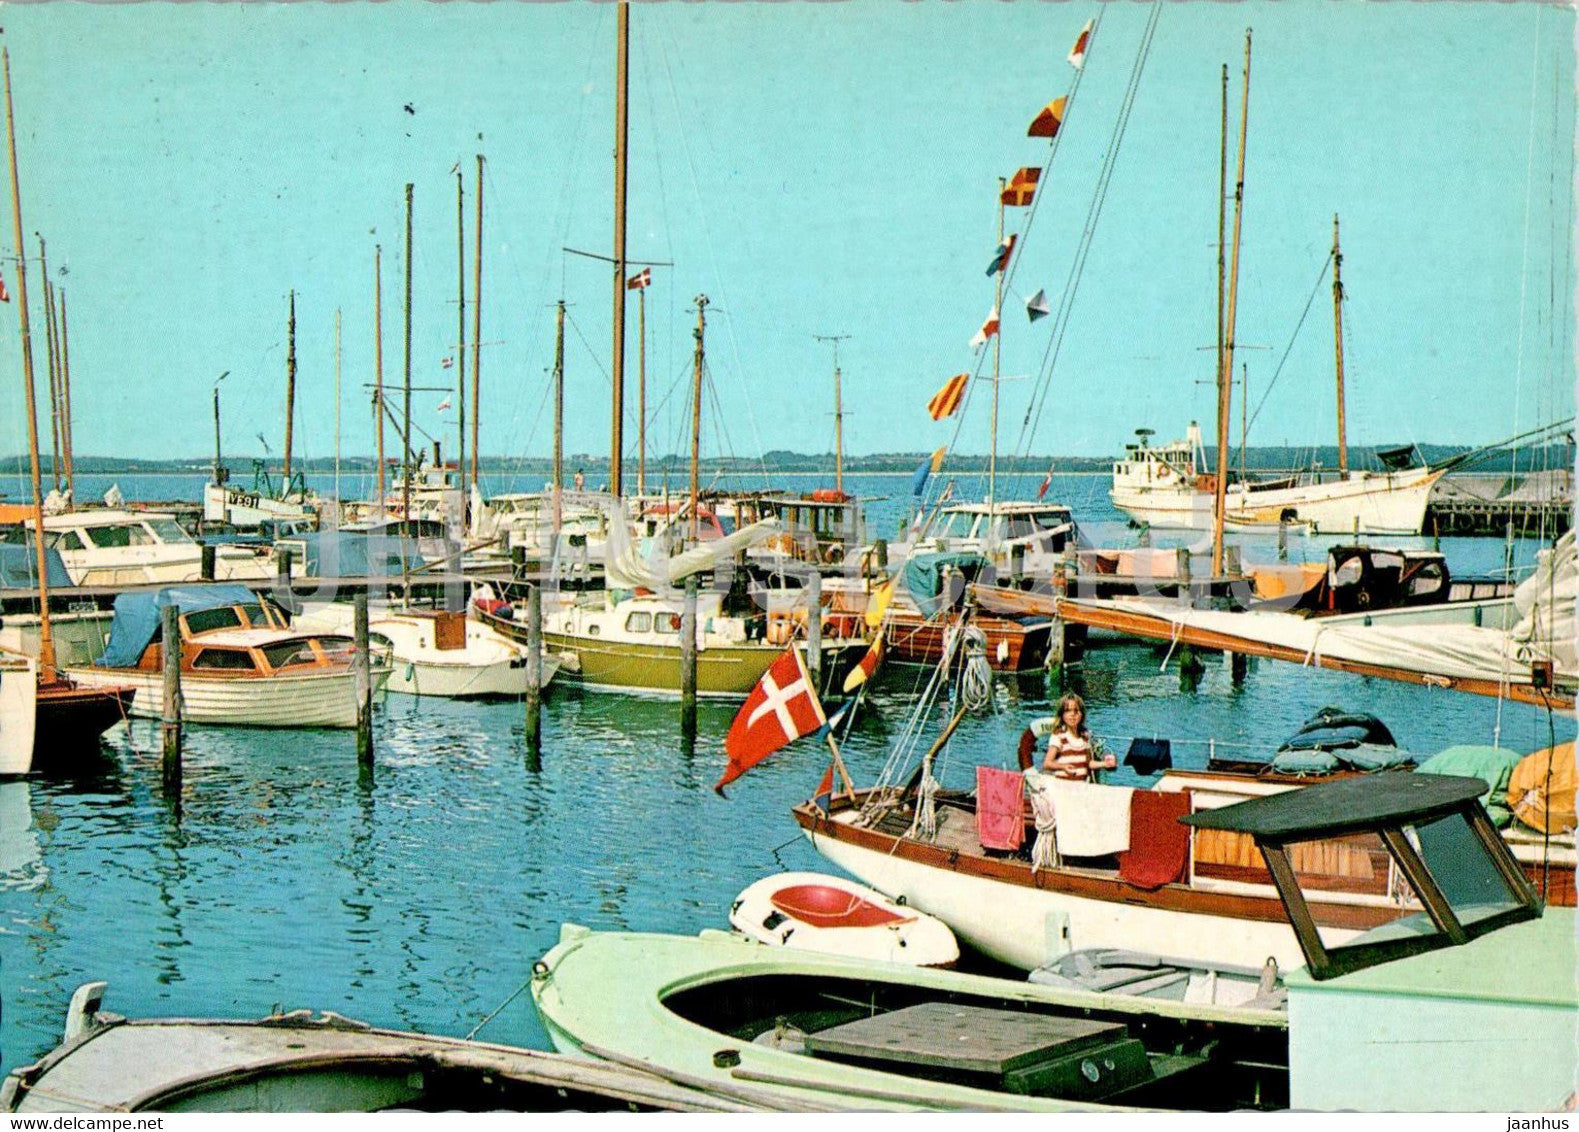 Juelsminde Havn - harbour - ship - boat - port - 1975 - Denmark - used - JH Postcards